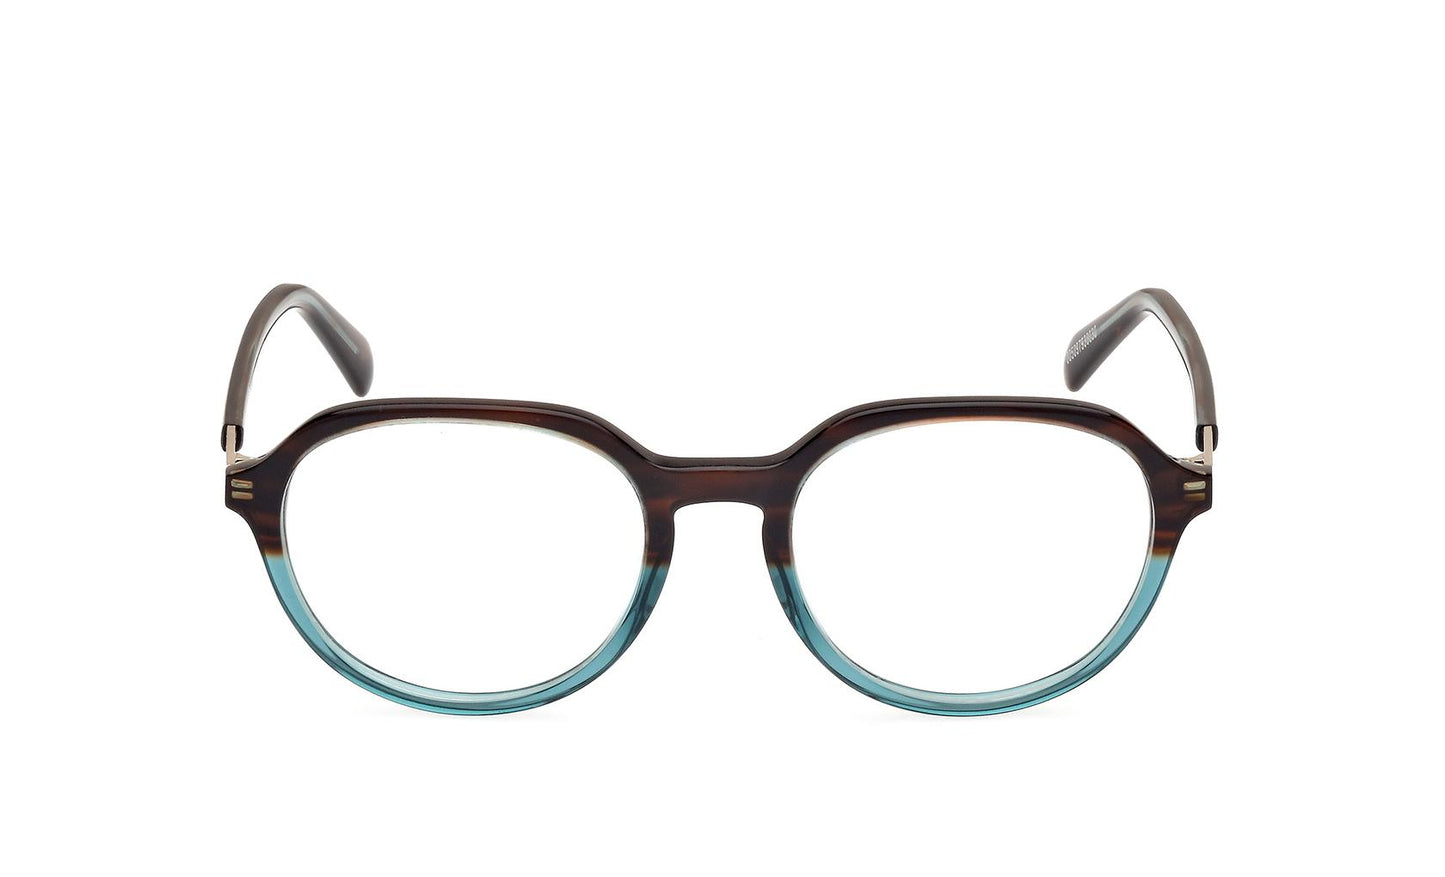 Emilio Pucci Eyeglasses EP5252 056